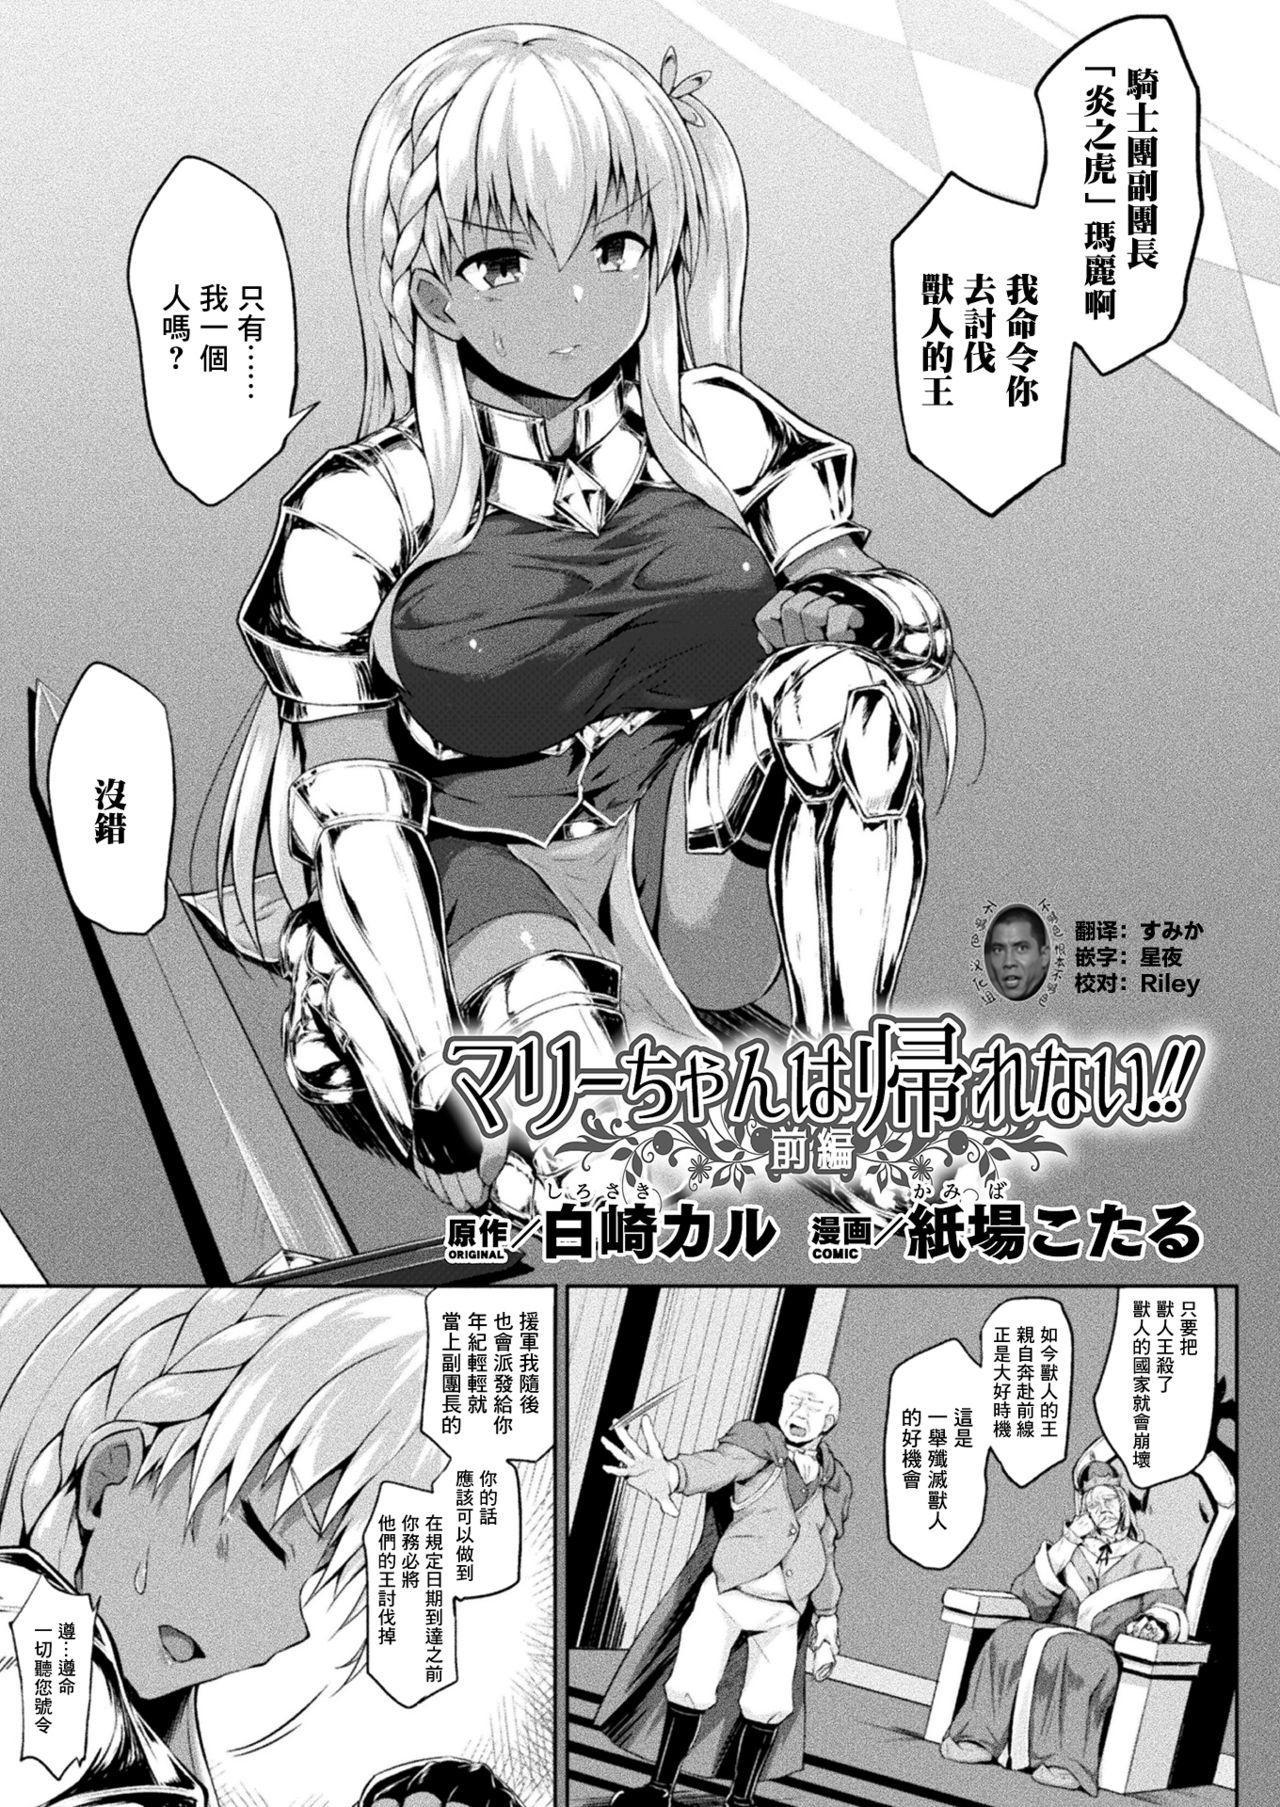 Sucking Mary-chan wa kaerenai! Zenpen Busty - Page 1